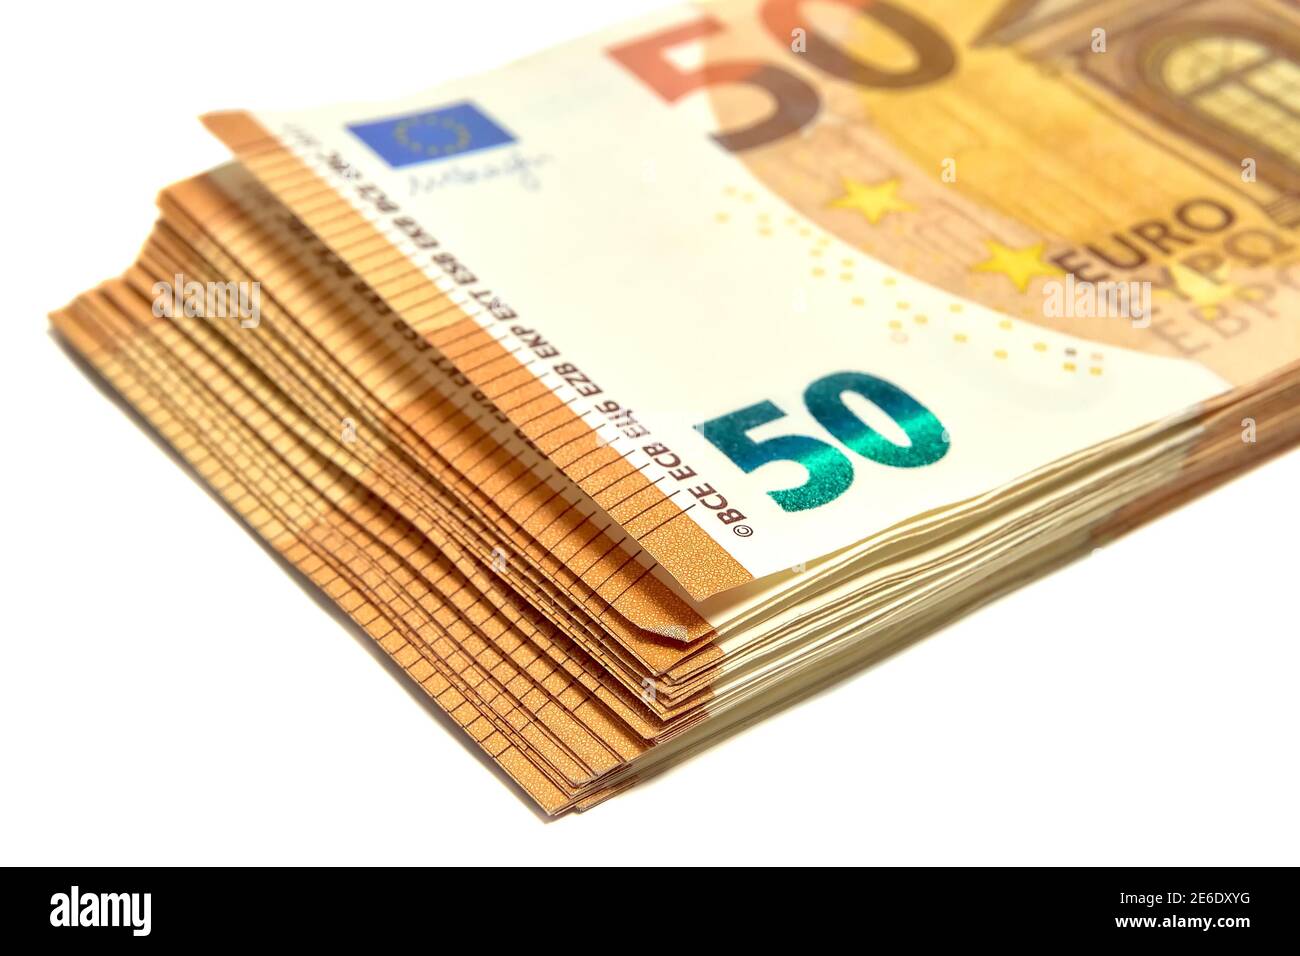 Un pack d'euros sur fond blanc, finance, monnaie Banque D'Images